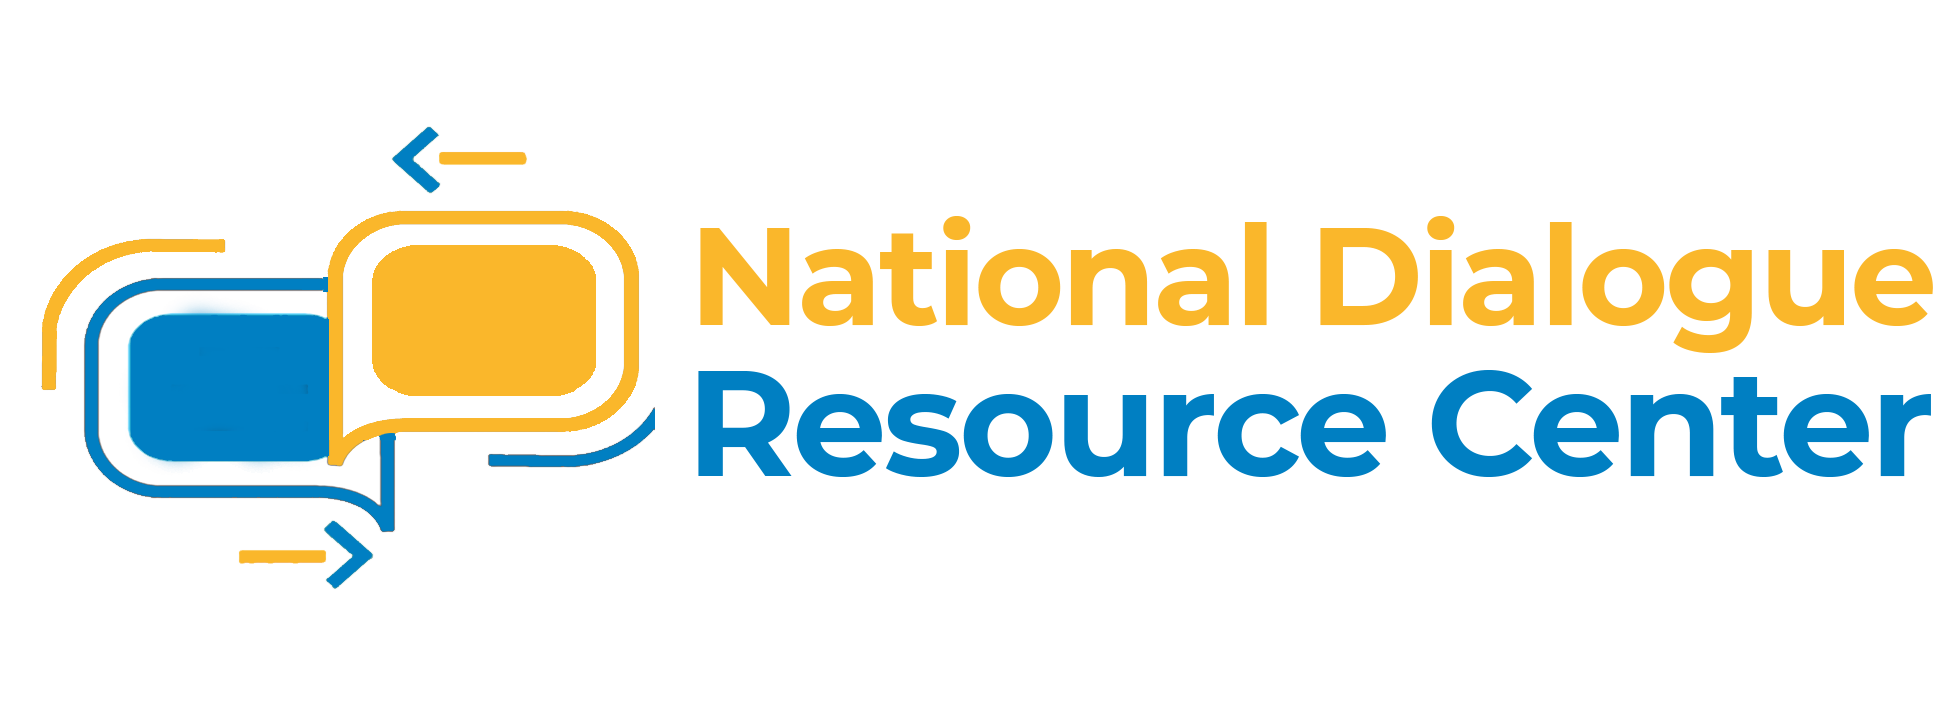 National Dialogue Resource Center